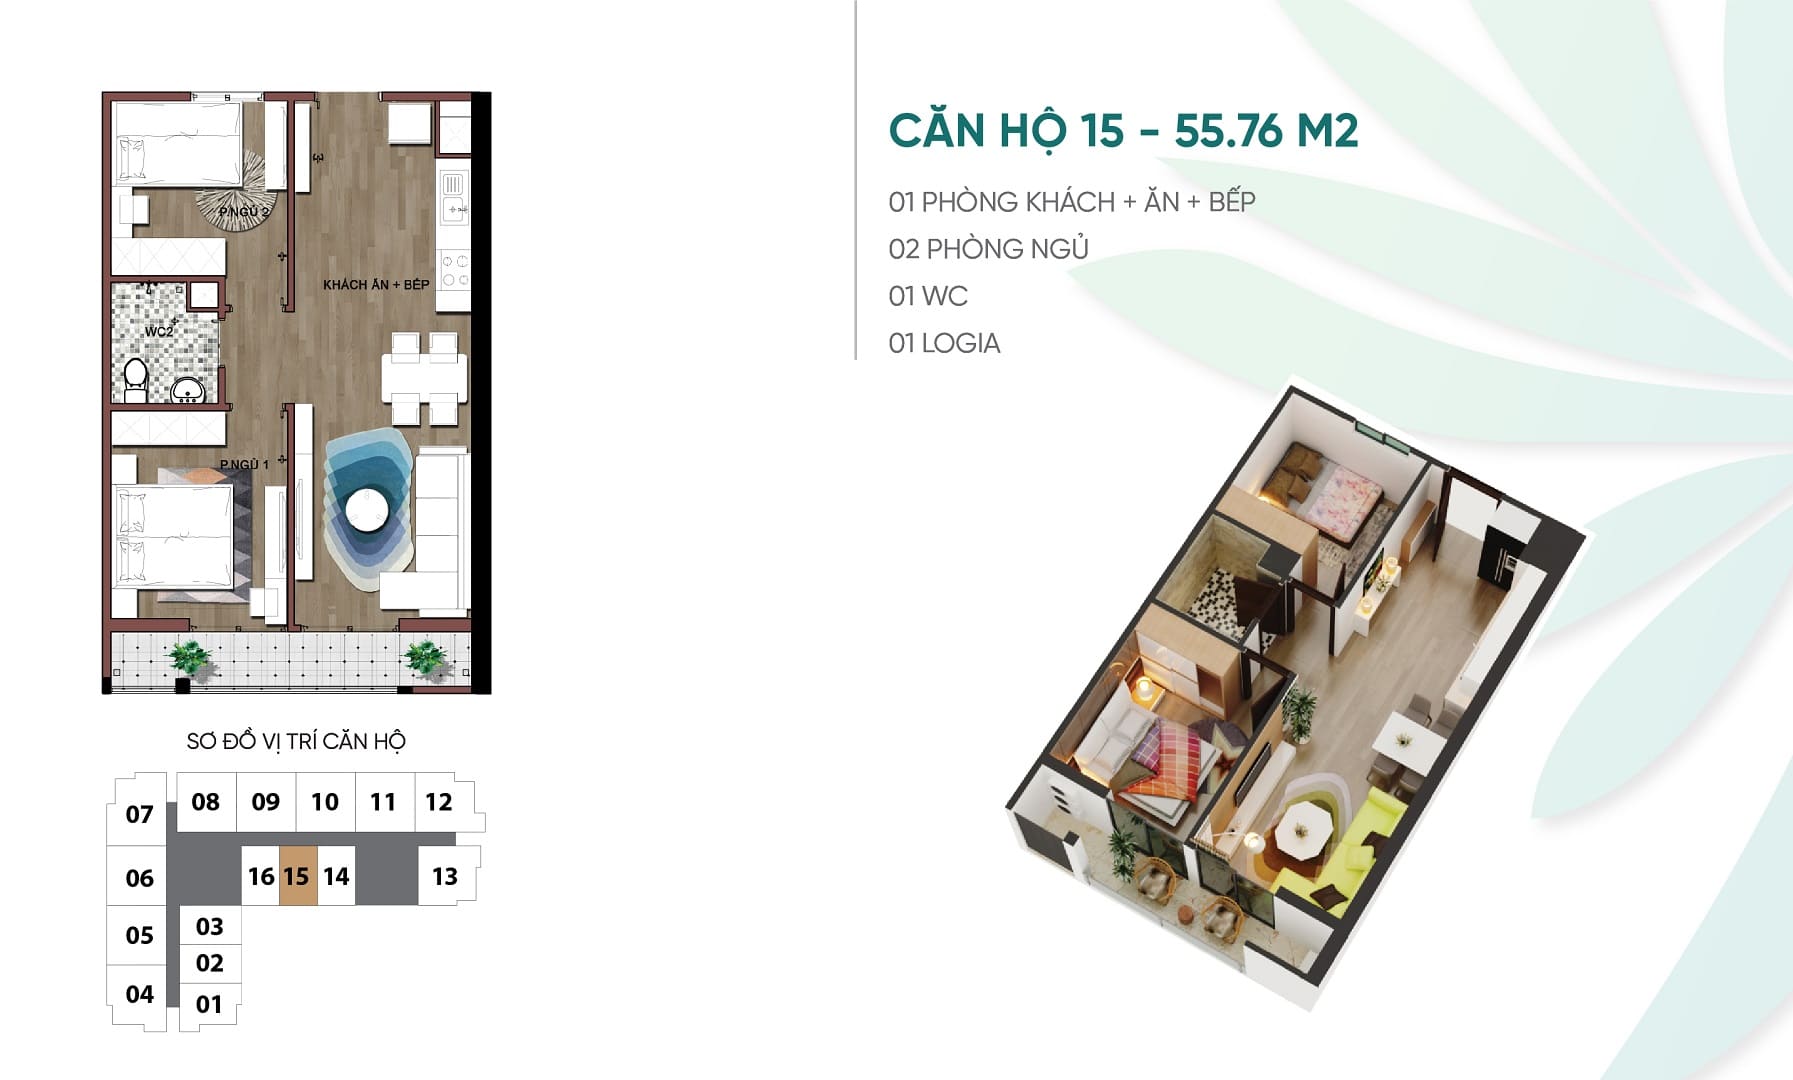 Thiết kế căn hộ chung cư số 15 An Bình Plaza 97 Trần Bình, Mỹ Đình, Nam Từ Liêm.